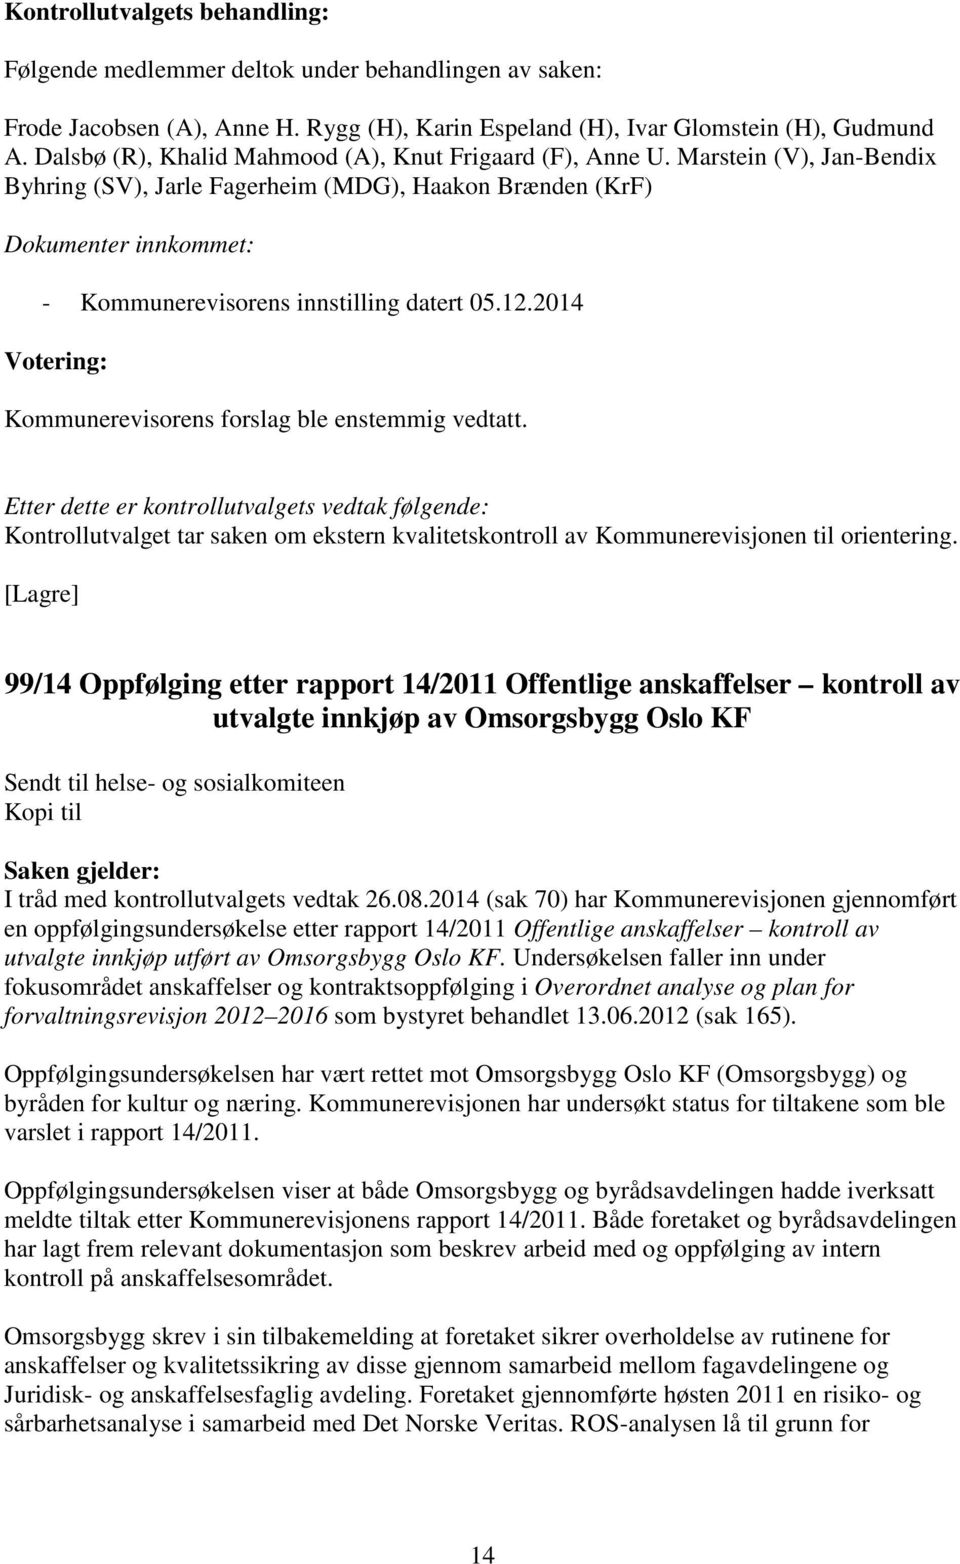 Marstein (V), Jan-Bendix Byhring (SV), Jarle Fagerheim (MDG), Haakon Brænden (KrF) Dokumenter innkommet: - Kommunerevisorens innstilling datert 05.12.